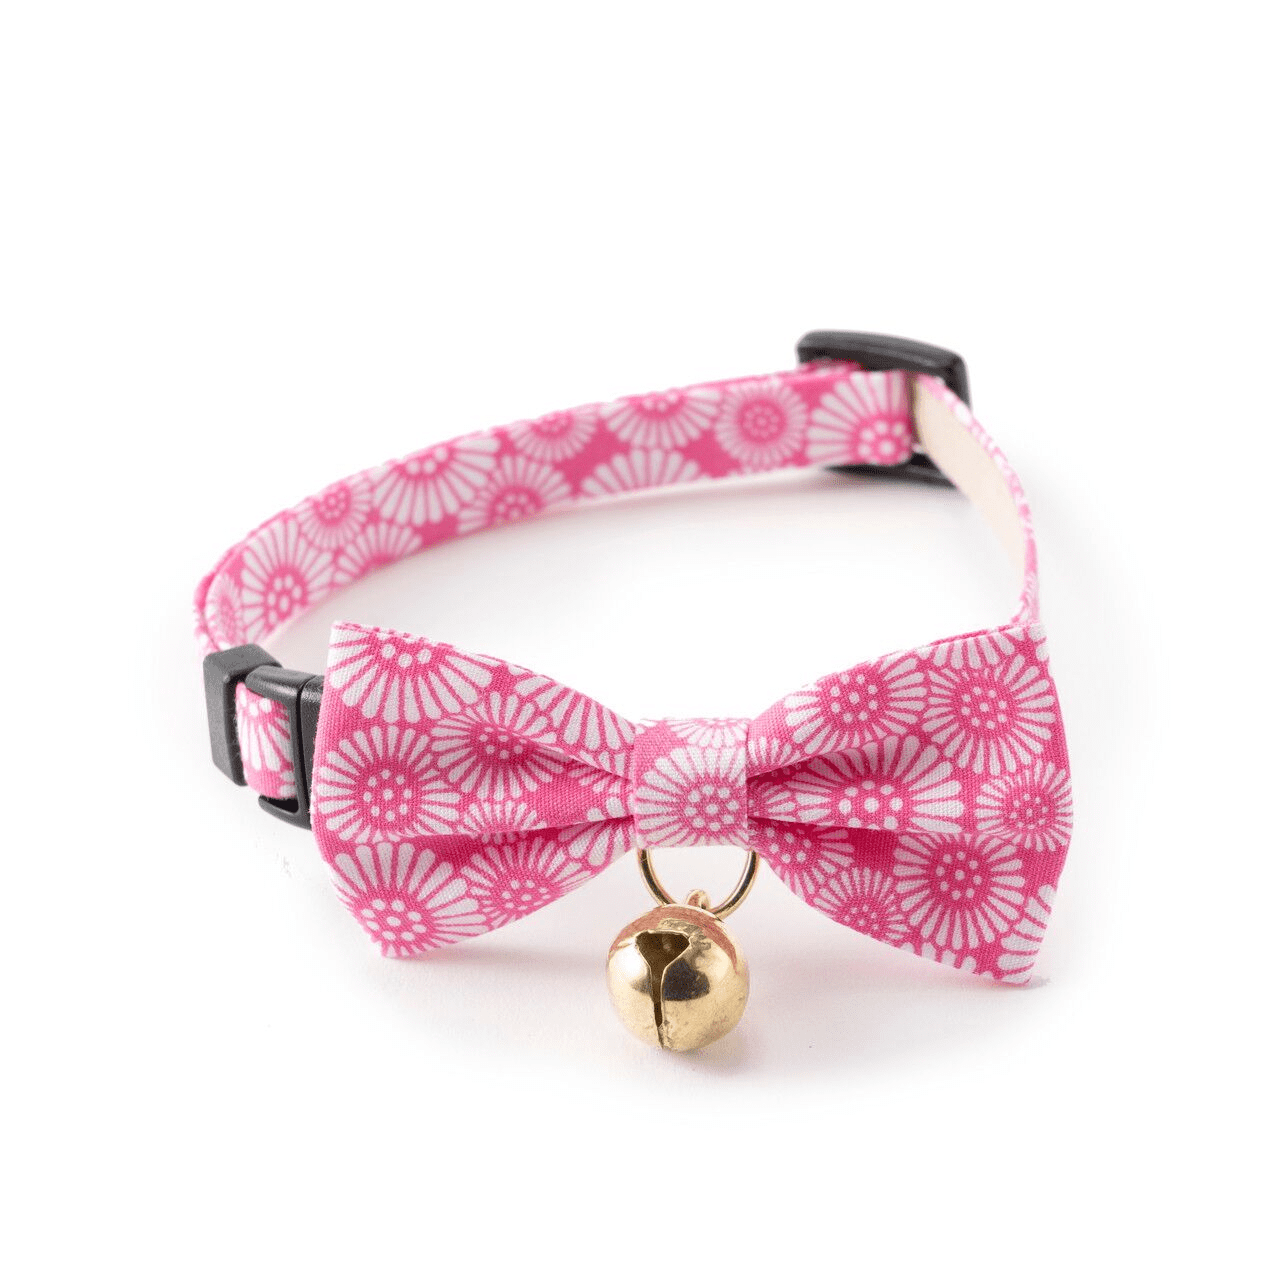 Necoichi Kiku Ribbon Bow Tie Cat Collar (Pink)